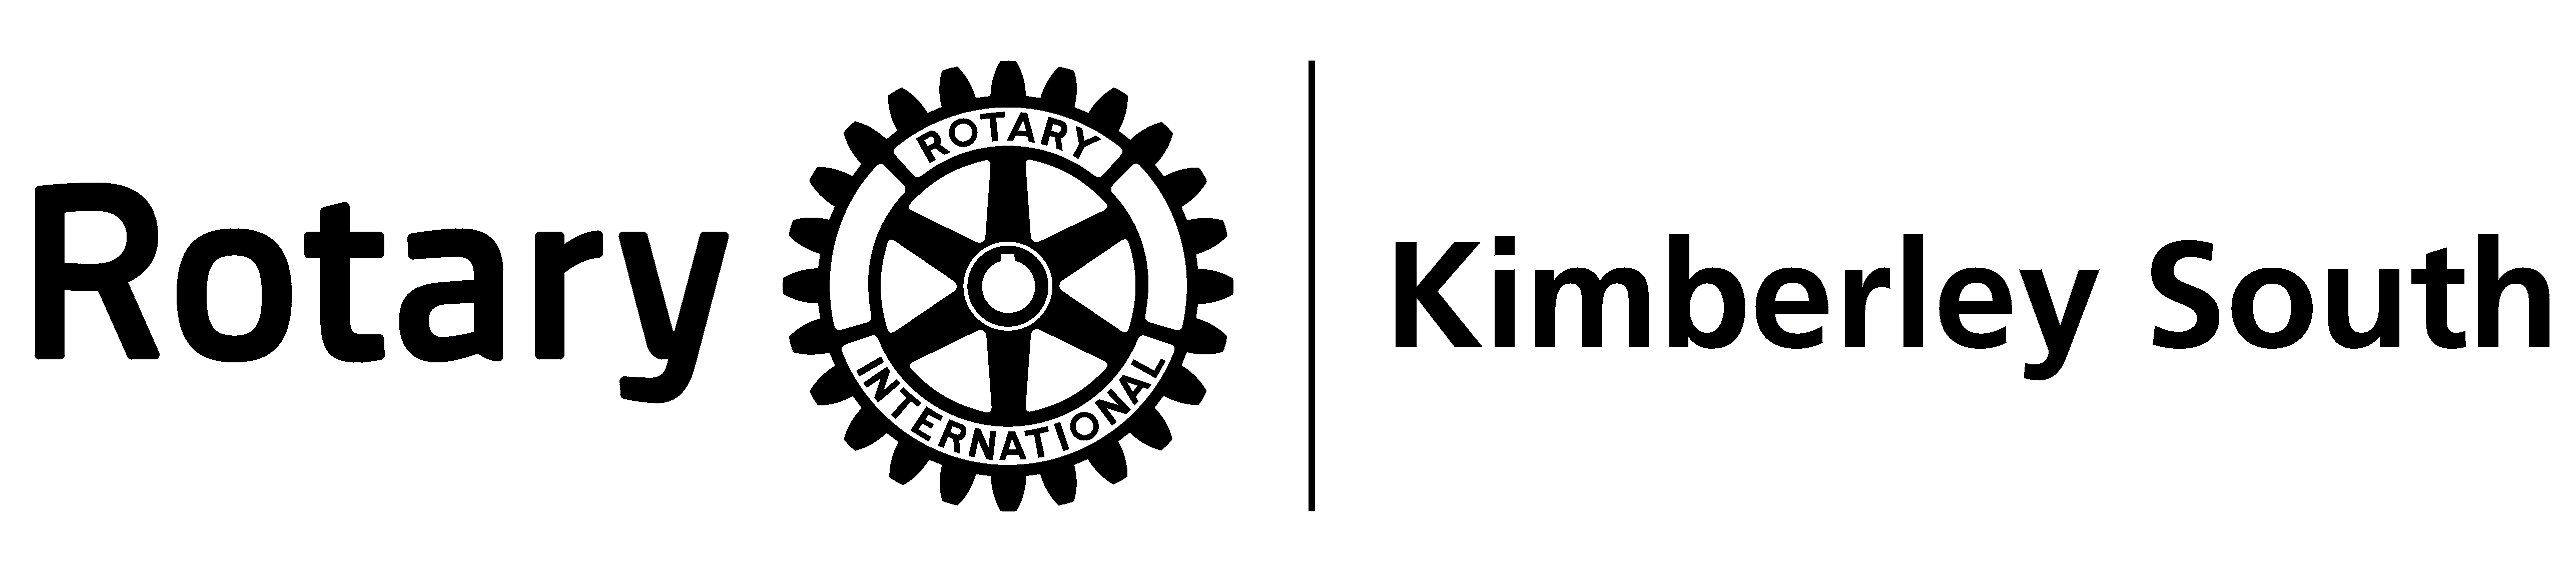 White Wheel Logo - Club Branding - Rotary Club of Kimberley South